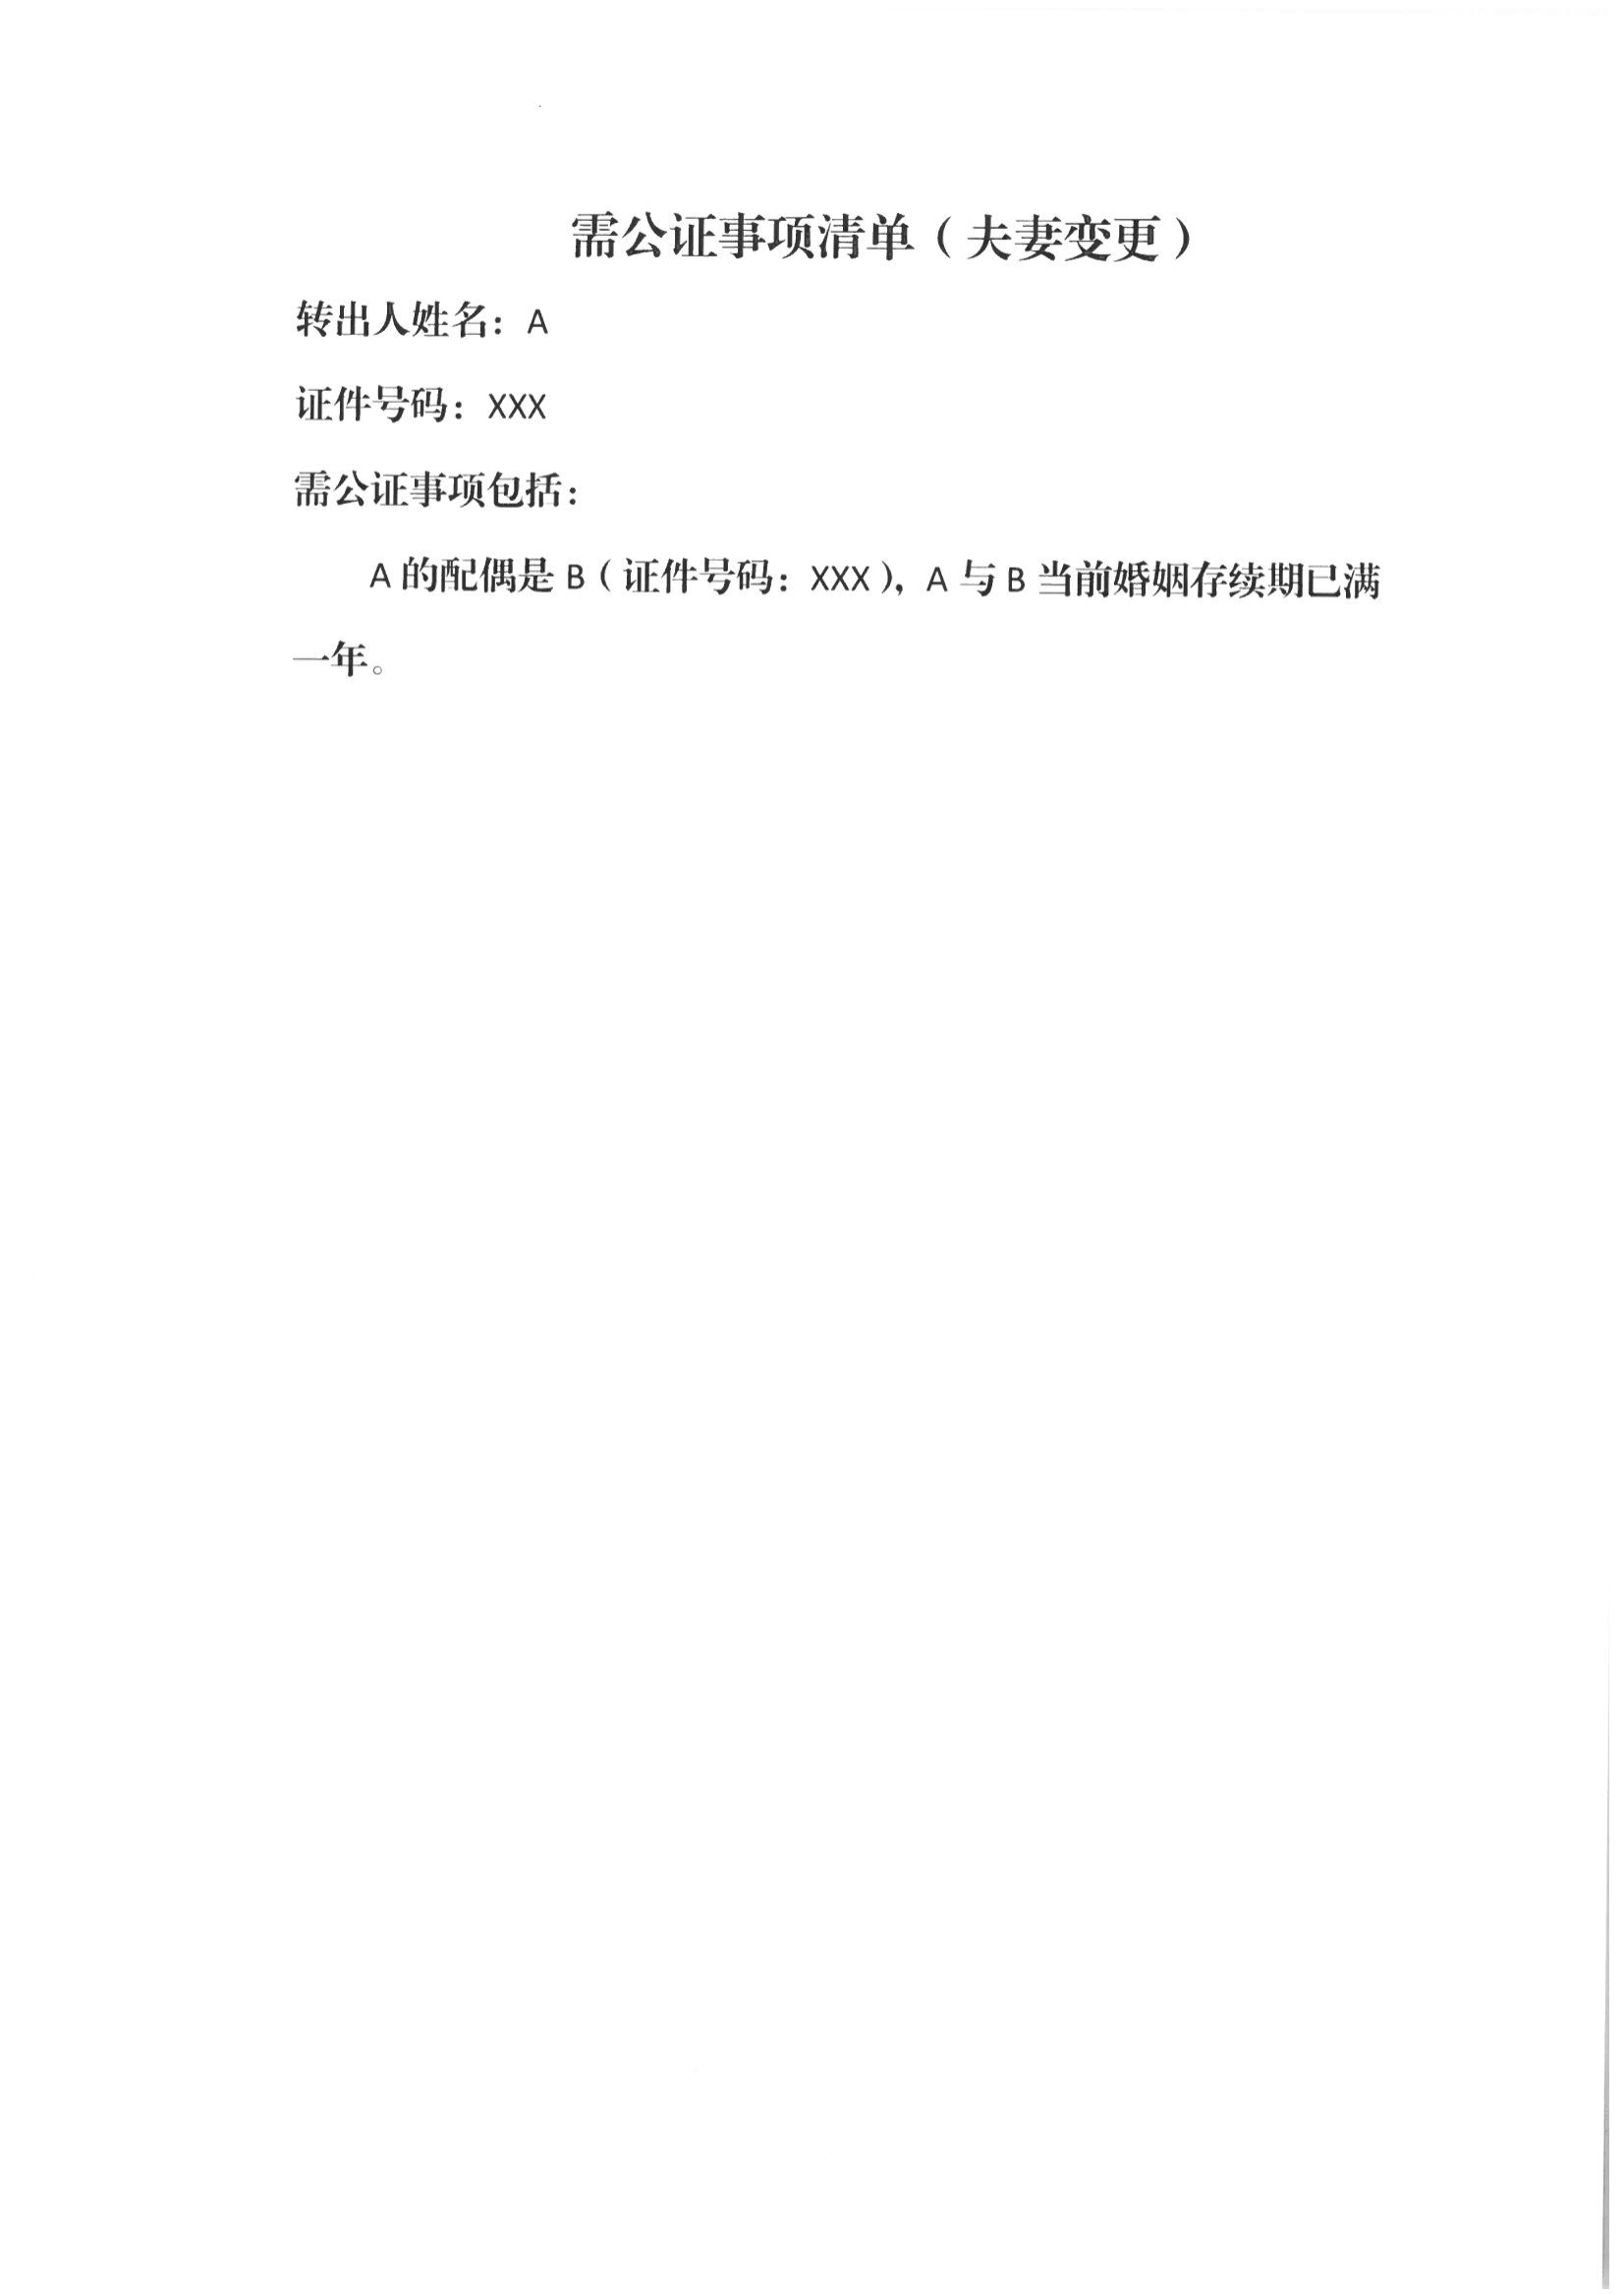 京公协字【2021】21号 北京市公证协会规范执业指引【第13号】_51